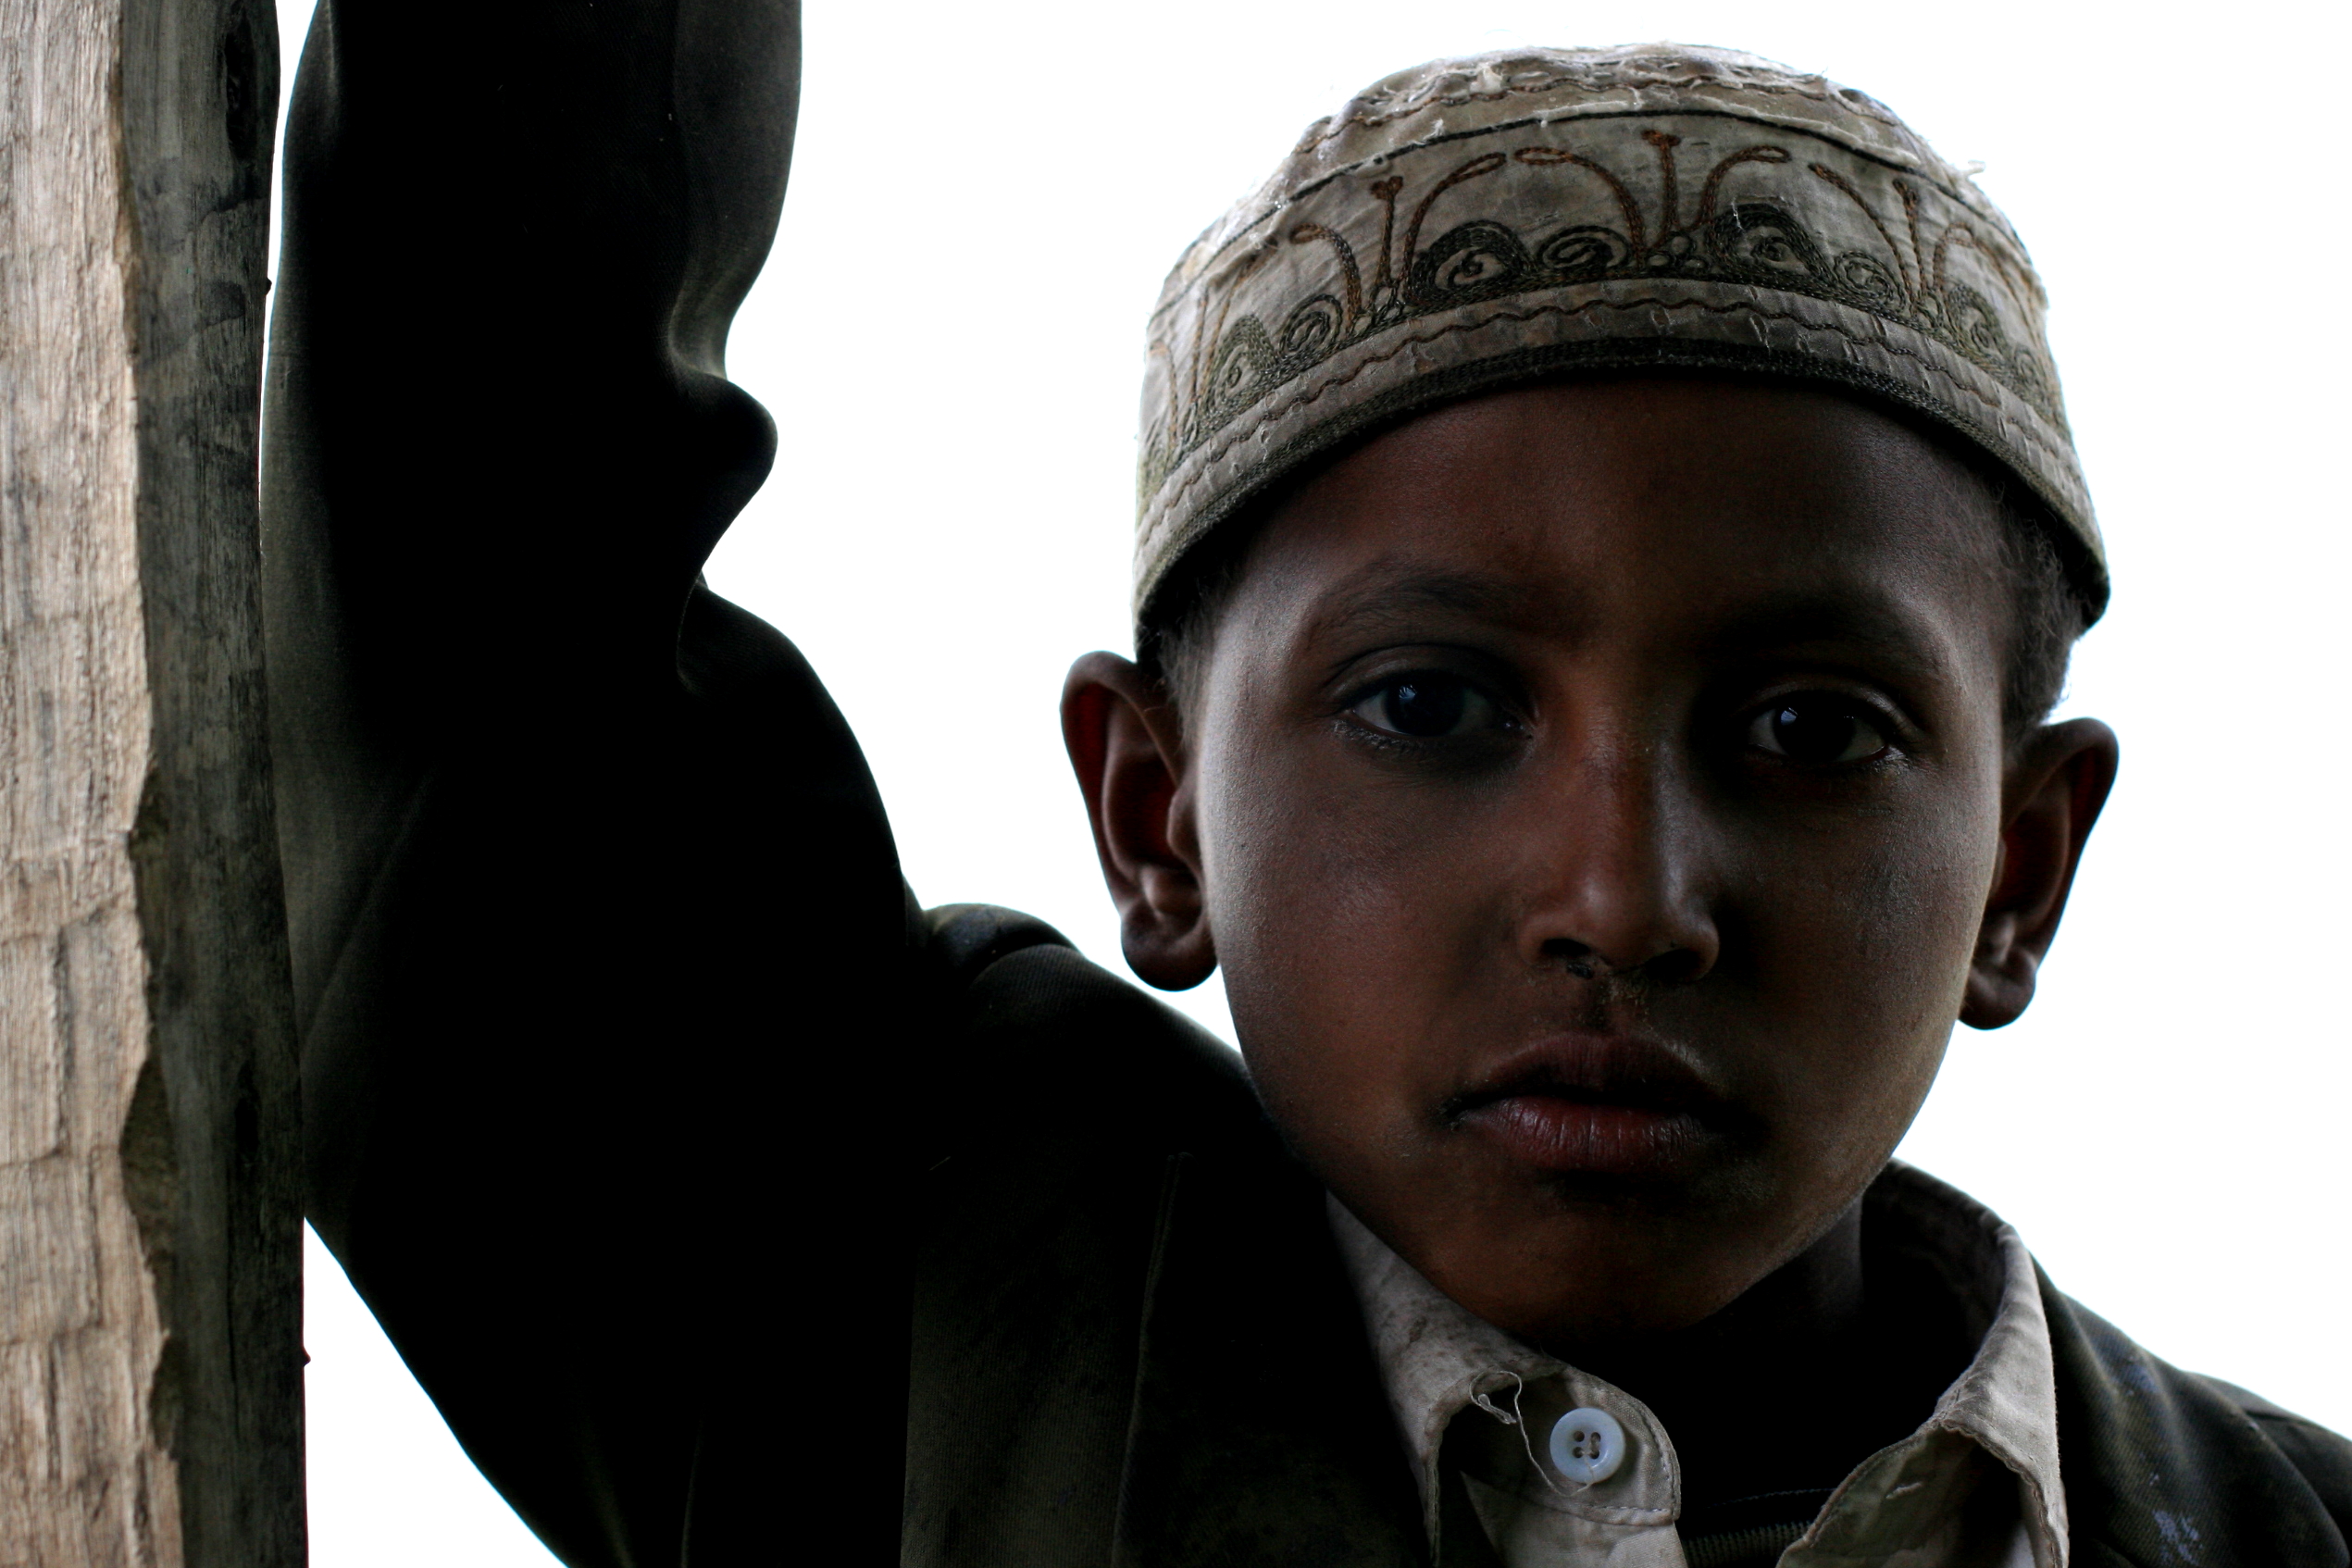 Muslim_Amhara_child